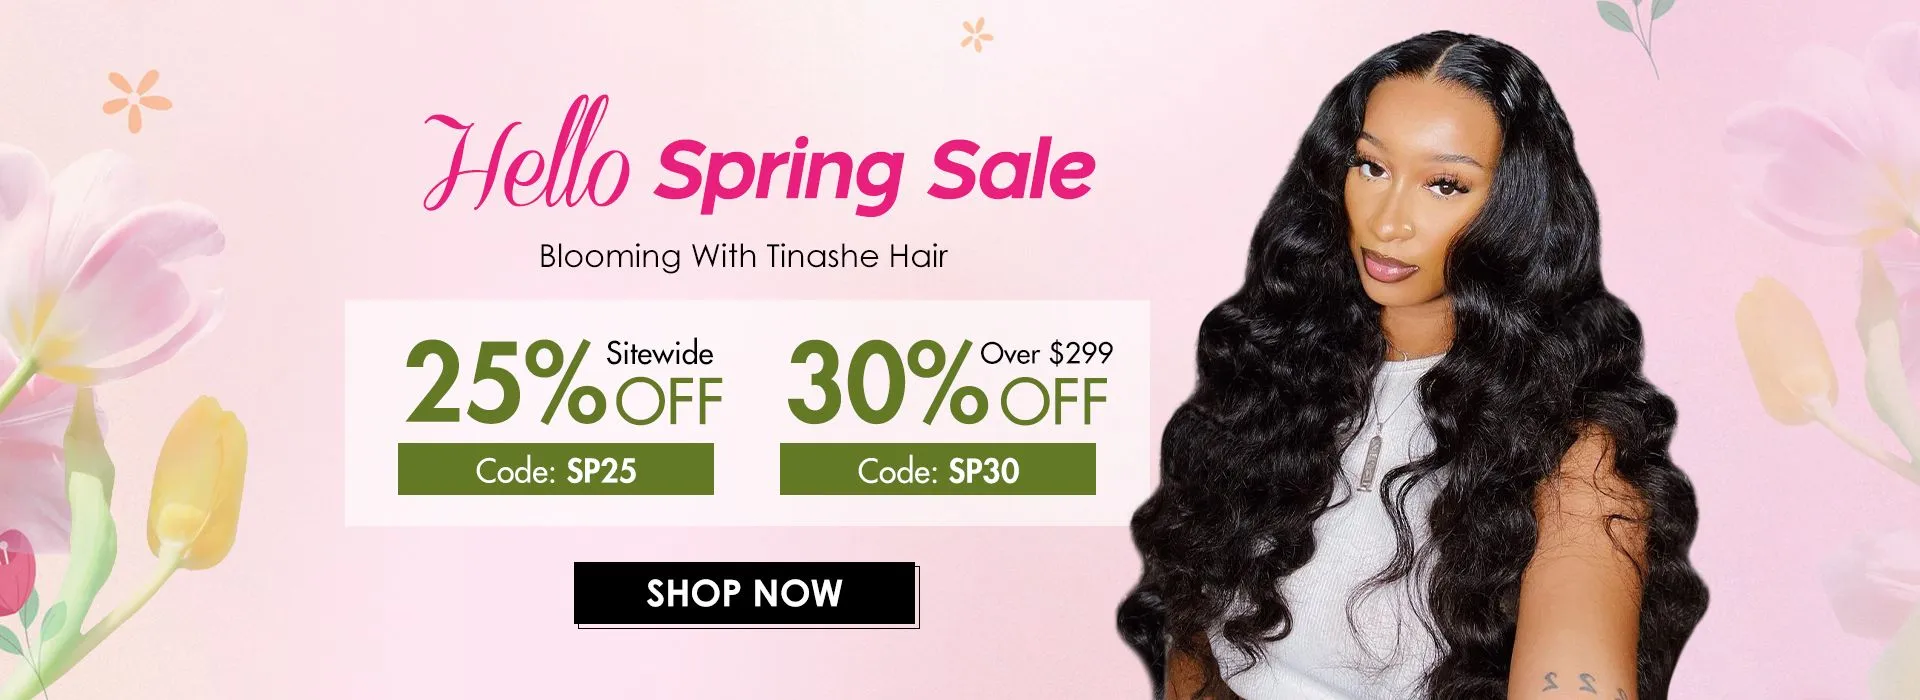 Tinashe hair Christmas sale